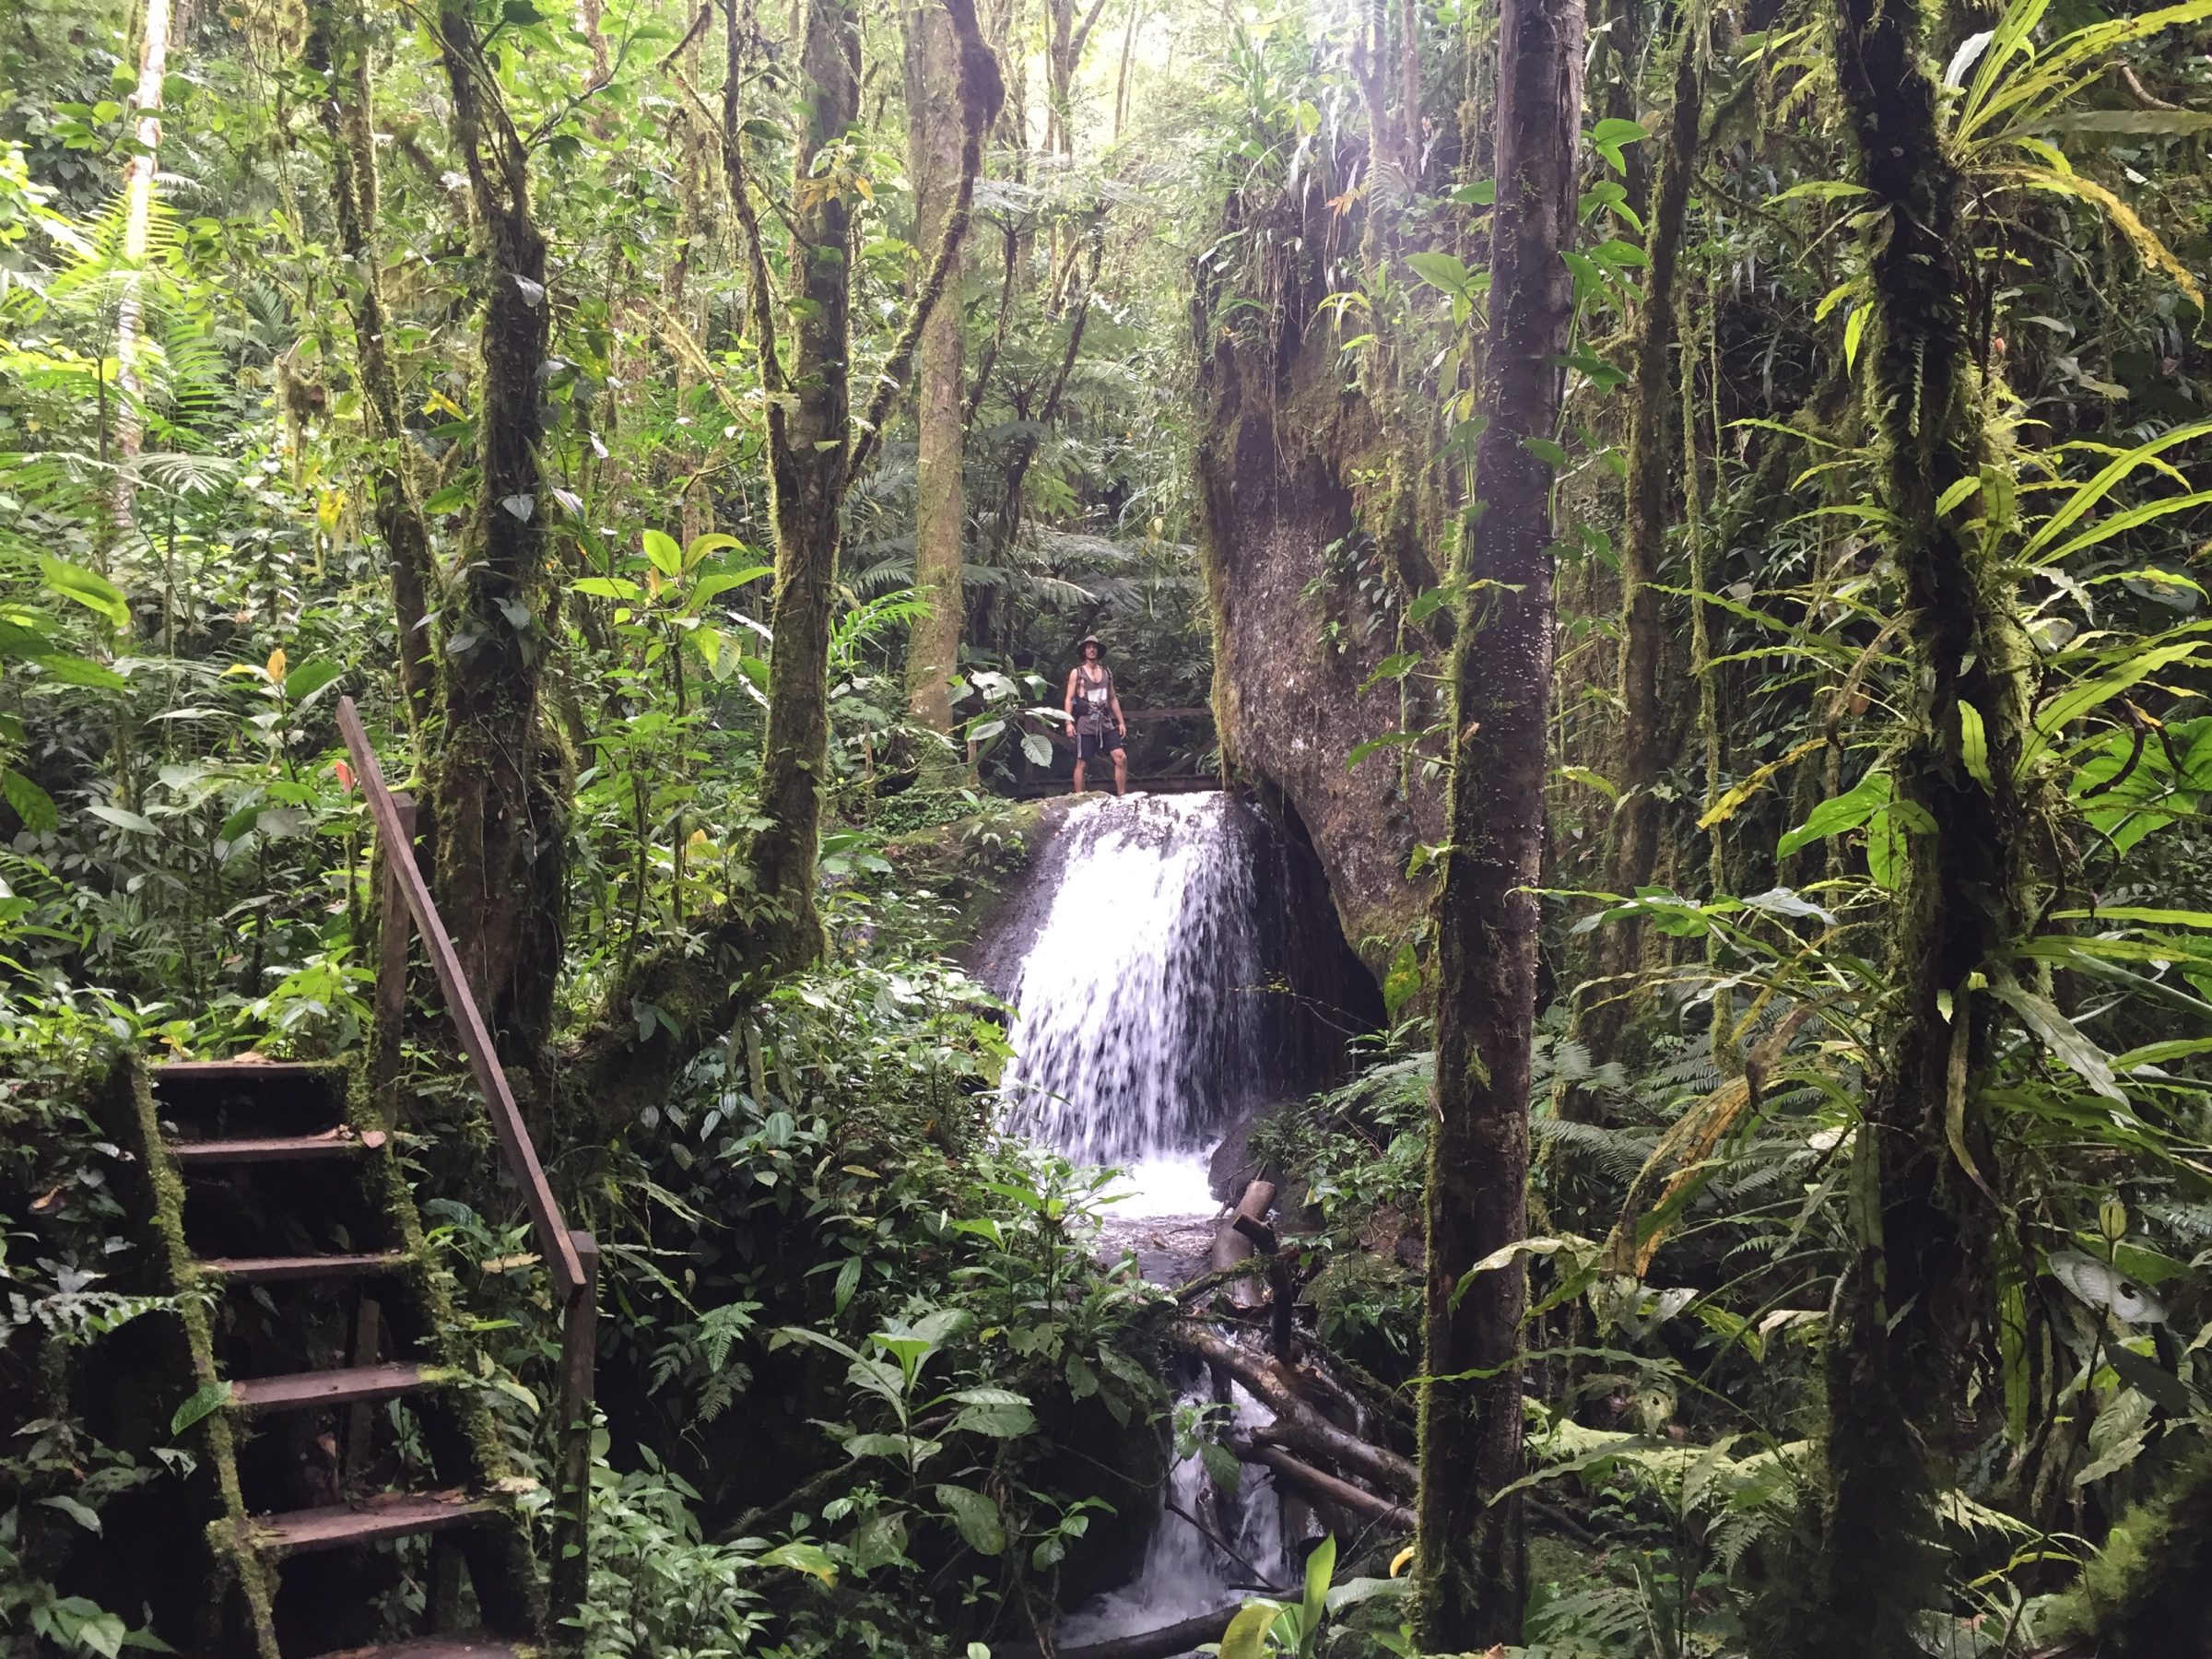 Wodospad z lasu deszczowego podczas wędrówki nad wodospadem | Zwiedzanie a la Casada, Penas Blancas